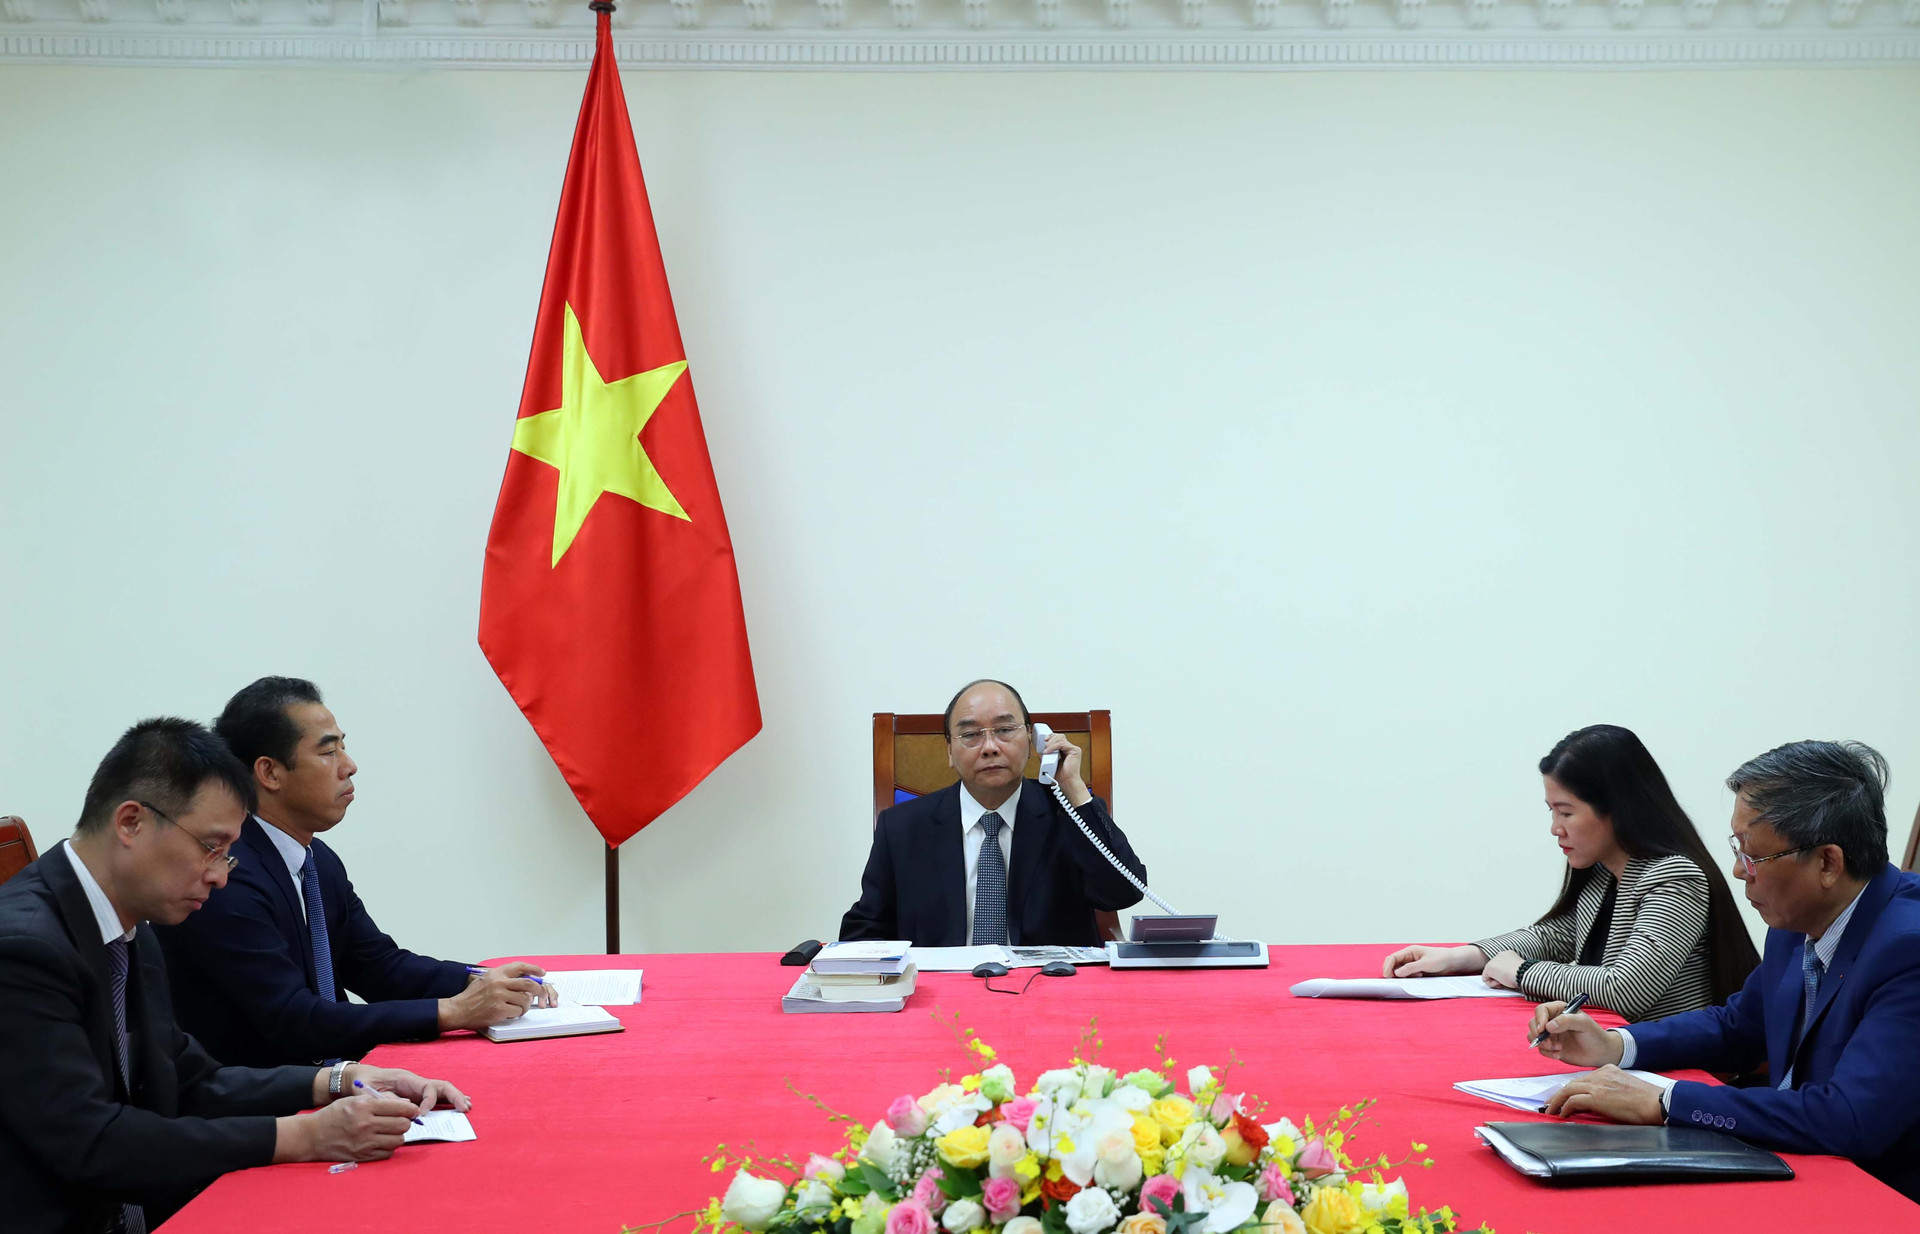 Việt Nam sẵn sàng hợp tác với Pháp và các đối tác để cùng vượt qua giai đoạn khó khăn - Ảnh 1.